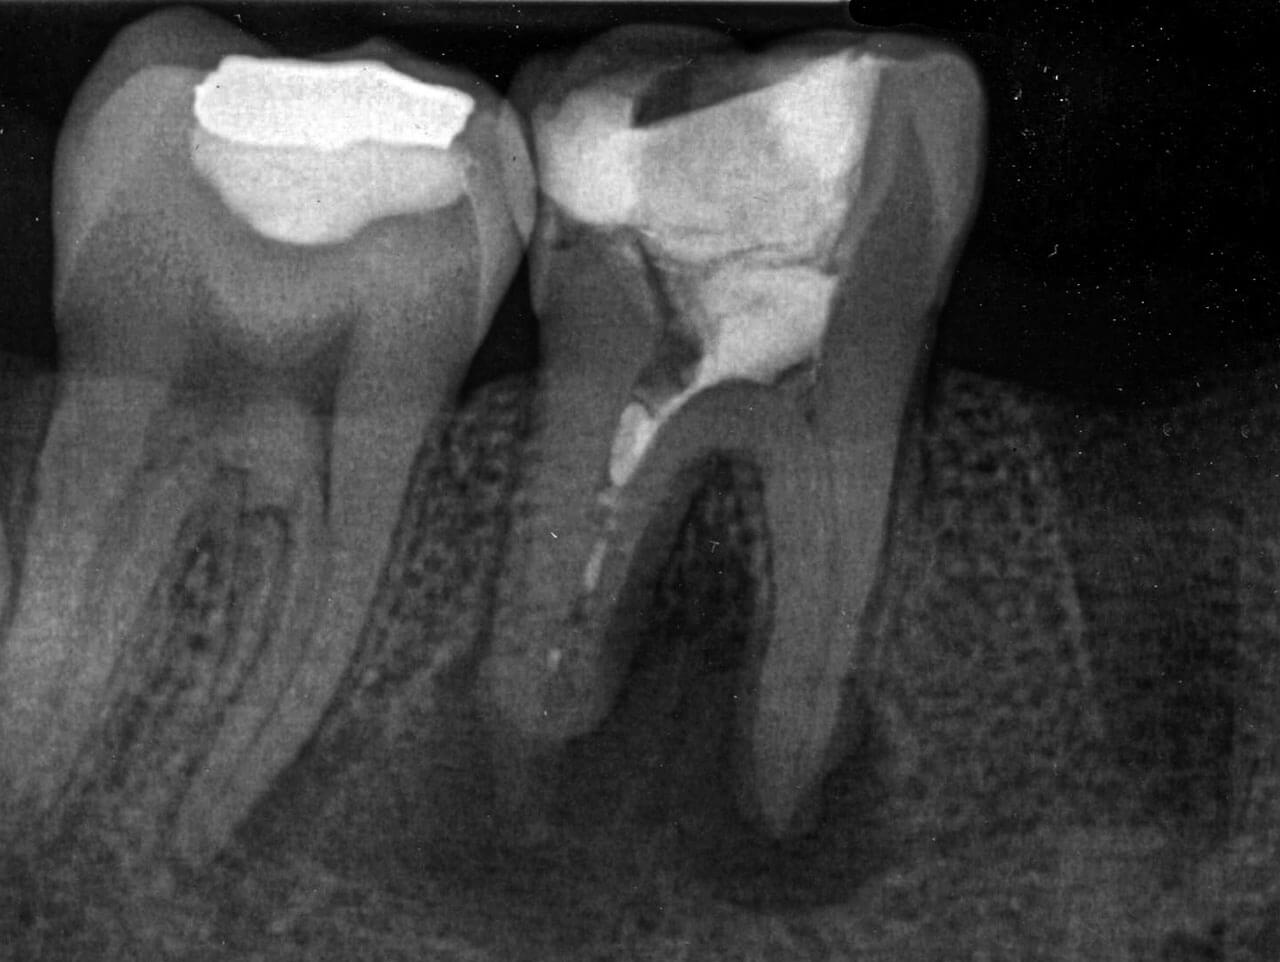 Abb. 1 Präoperative Ausgangsaufnahme von Zahn 46 vom Juni 2018 mit ausgeprägter apikaler Resorption und deutlicher apikaler Aufhellung an beiden Wurzeln. Die distale Wurzel weist teilweise Füllmaterial auf, vermutlich eine röntgenopake medikamentöse Einlage.